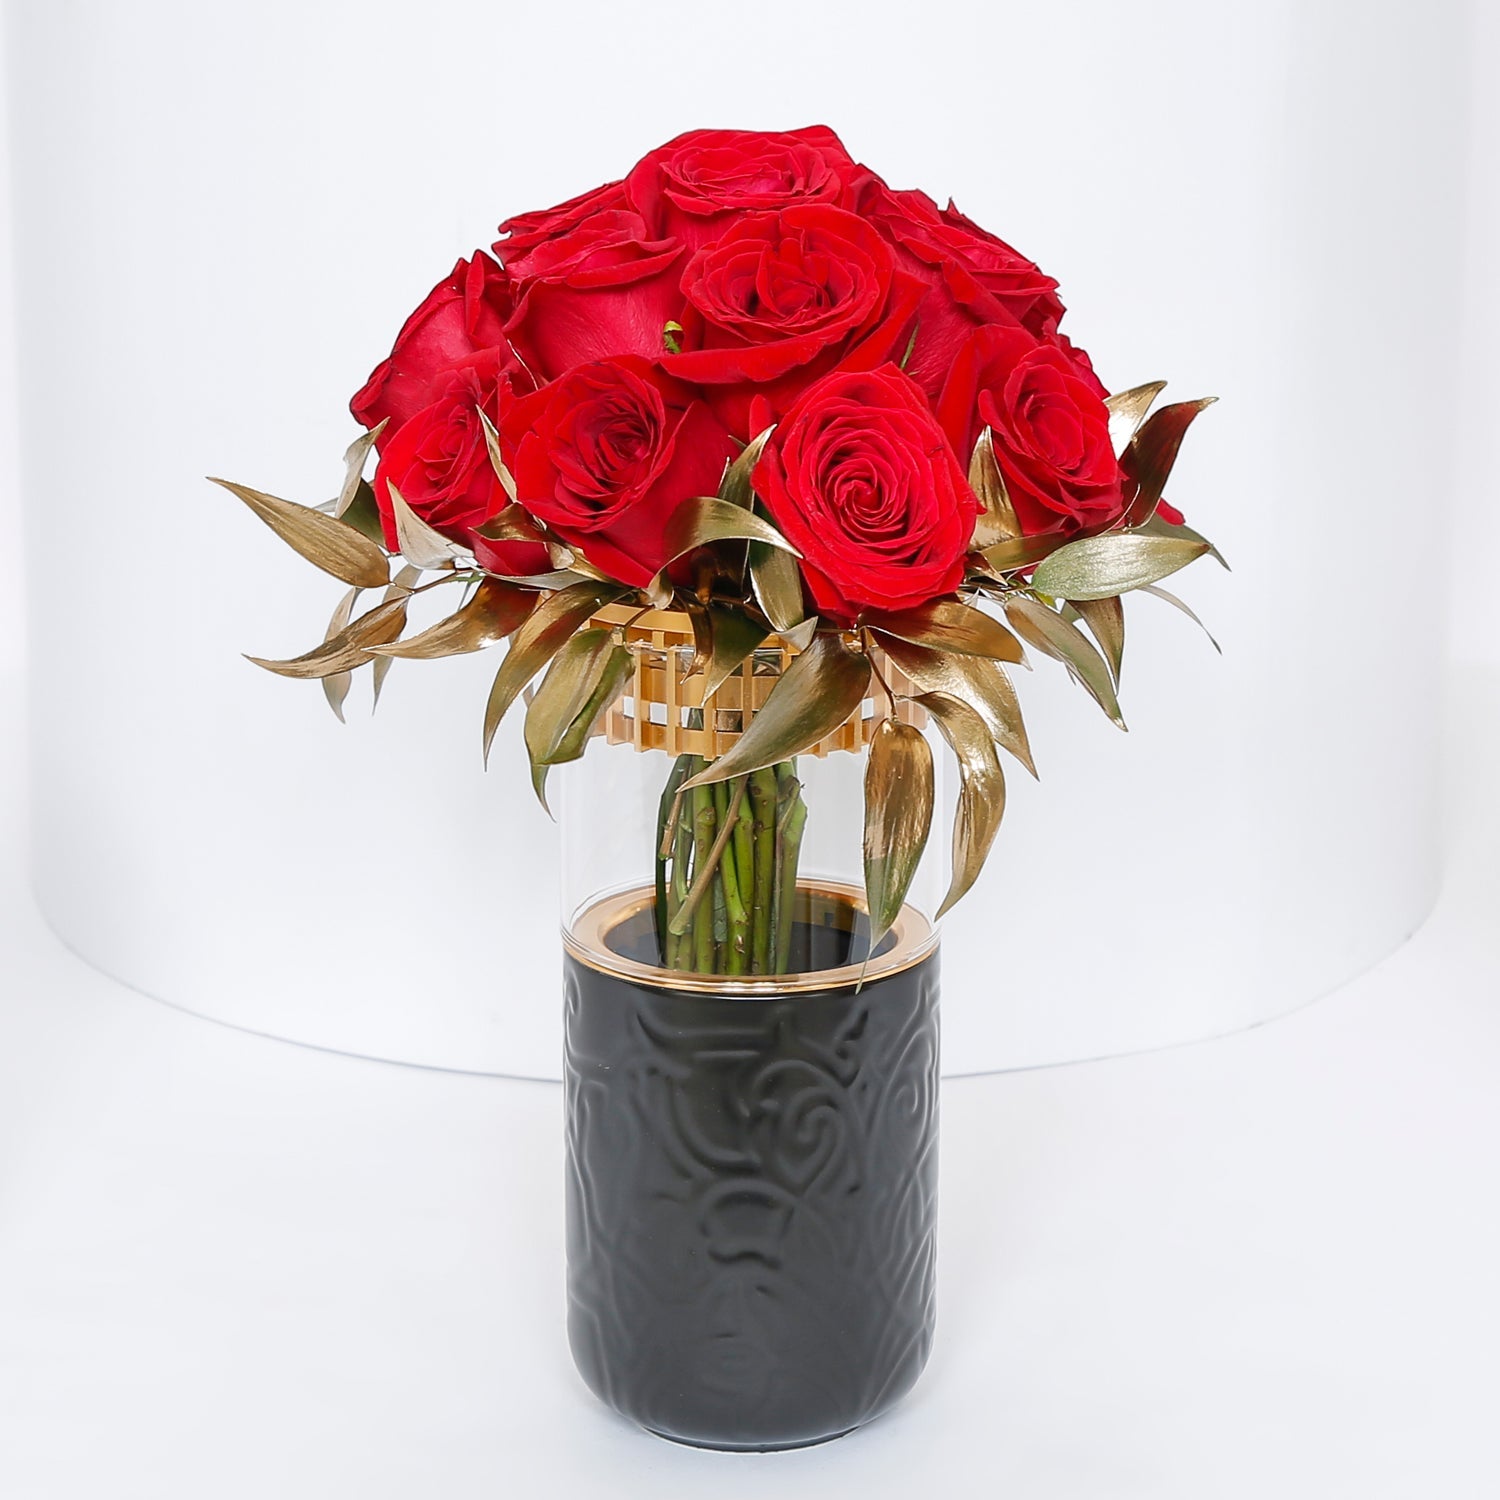 تنسيق الورود الحمراء مع توبر عمرة مبارك